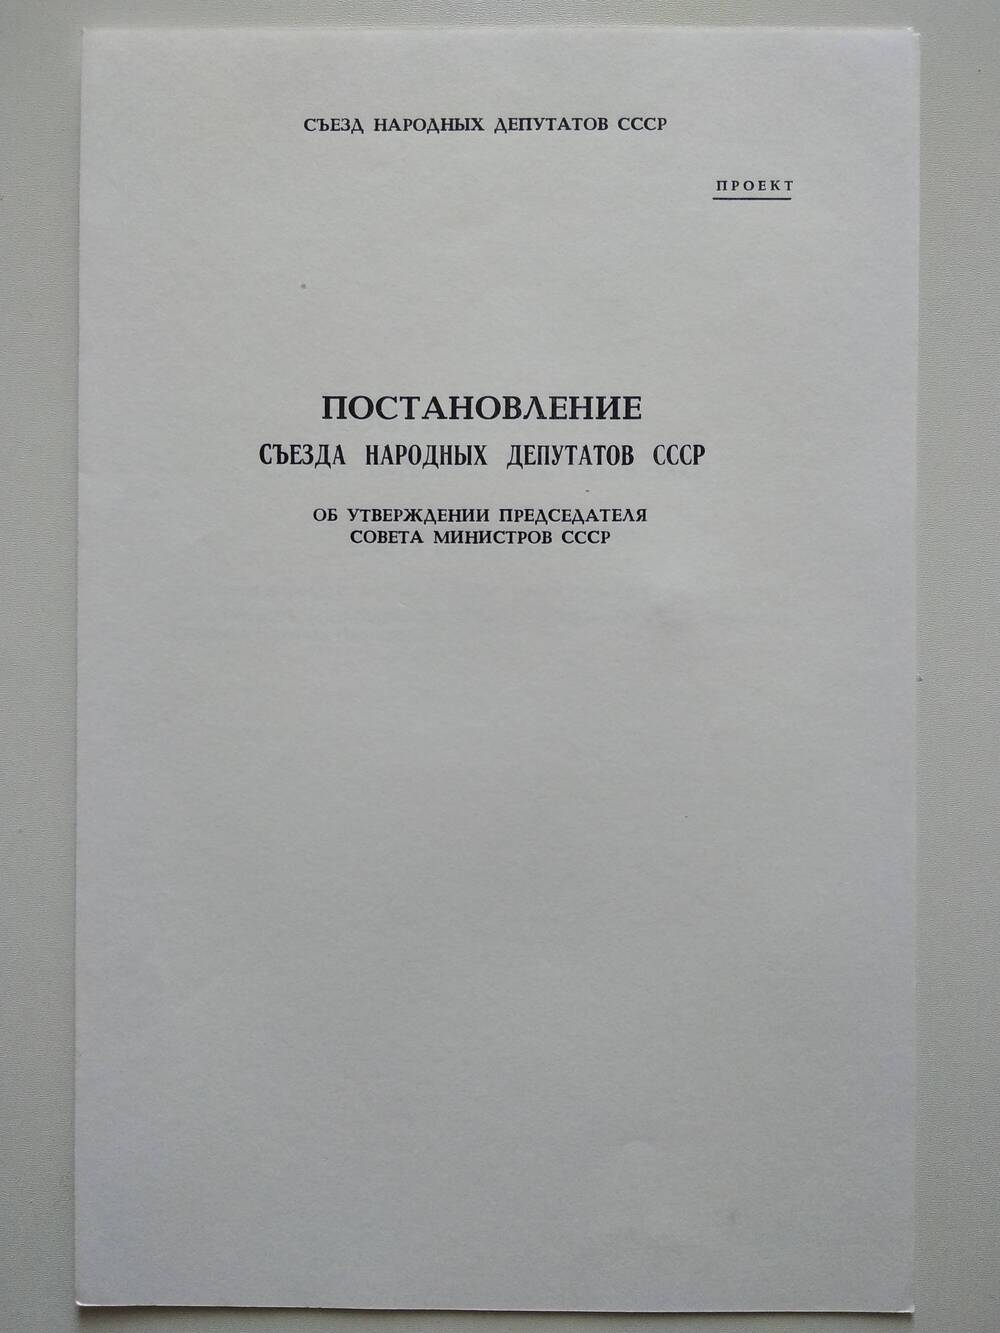 Проект постановления съезда народных депутатов СССР об утверждении председателя Совета Министров.